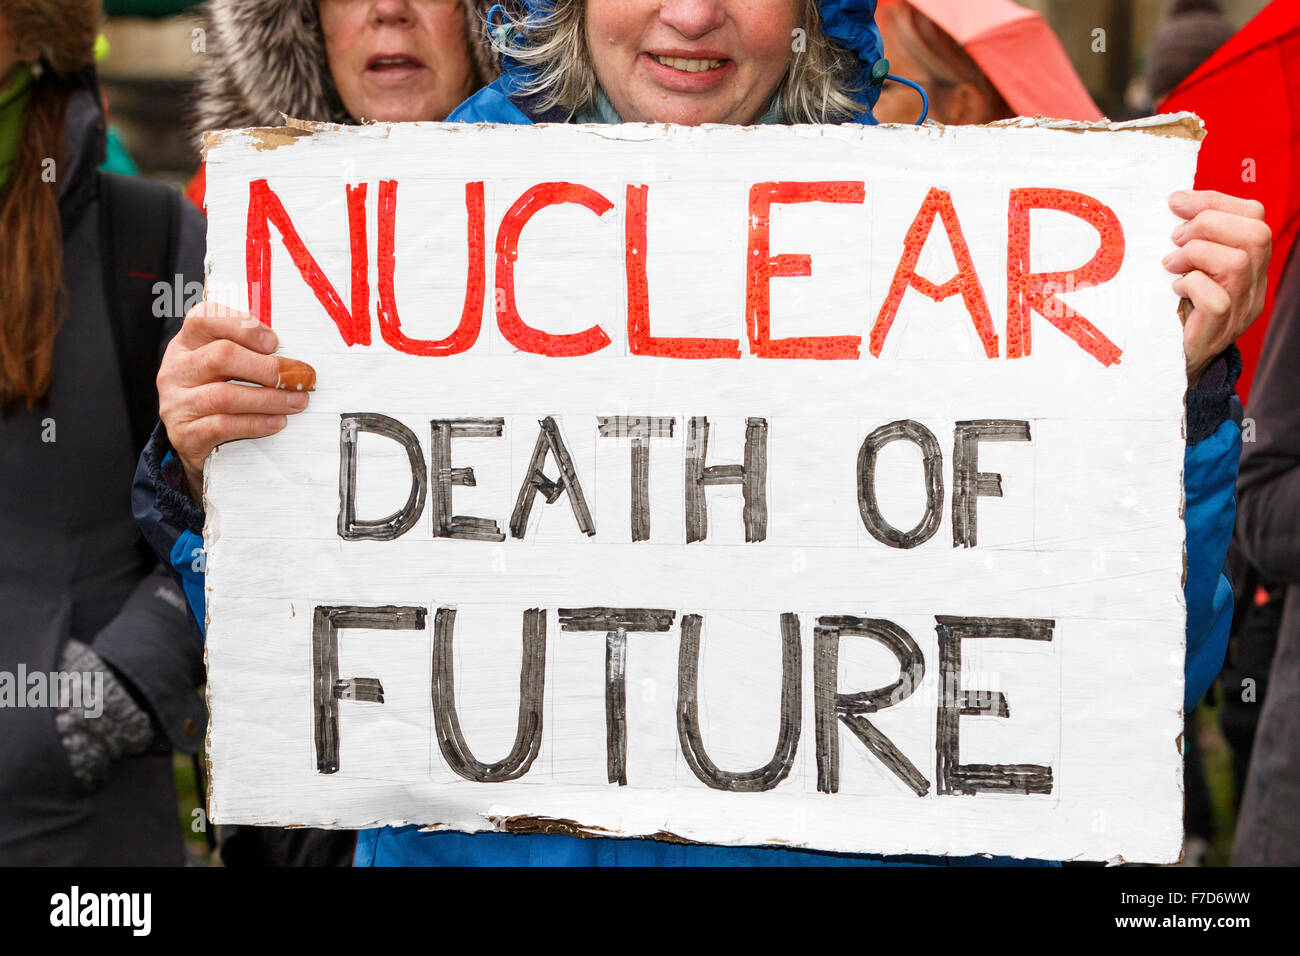 Bristol, UK, le 29 novembre, 2015. Un manifestant anti-nucléaire est représenté tenant une pancarte à la fin de l'action de peuples Bristols sur le changement climatique de protestation. Les dirigeants du monde se sont réunis à Paris le 30 novembre pour le sommet des Nations Unies sur le climat (COP21) Crédit : lynchpics/Alamy Live News Banque D'Images